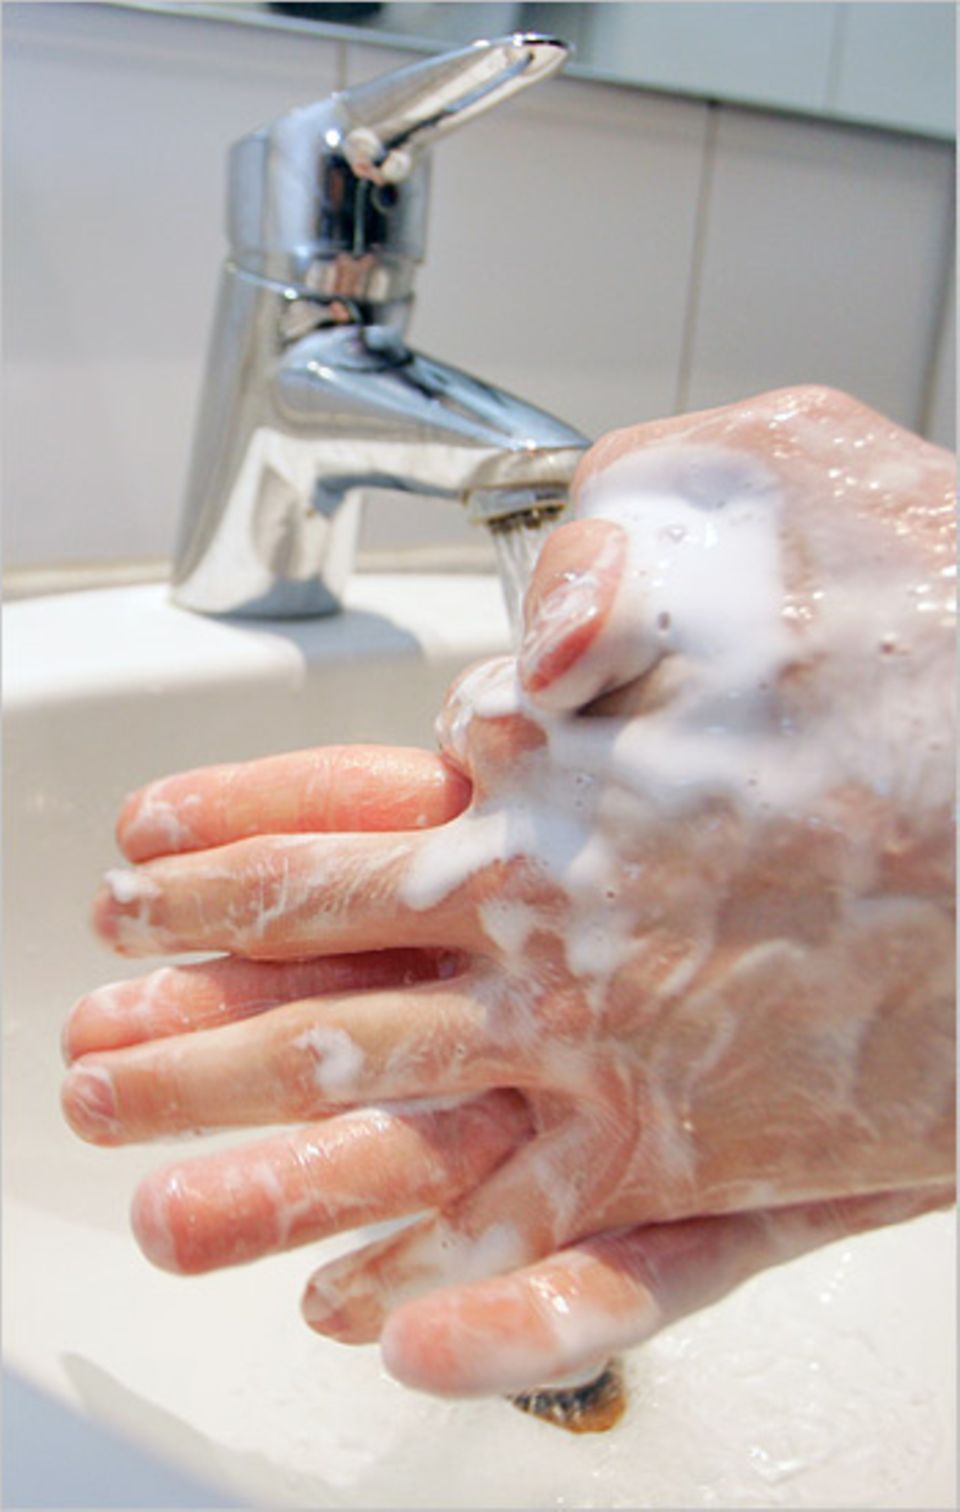 Gesundheit: Händewaschen ist wichtig, damit Krankheitserreger nicht an die Schleimhäute gelangen, sondern direkt abgewaschen werden.